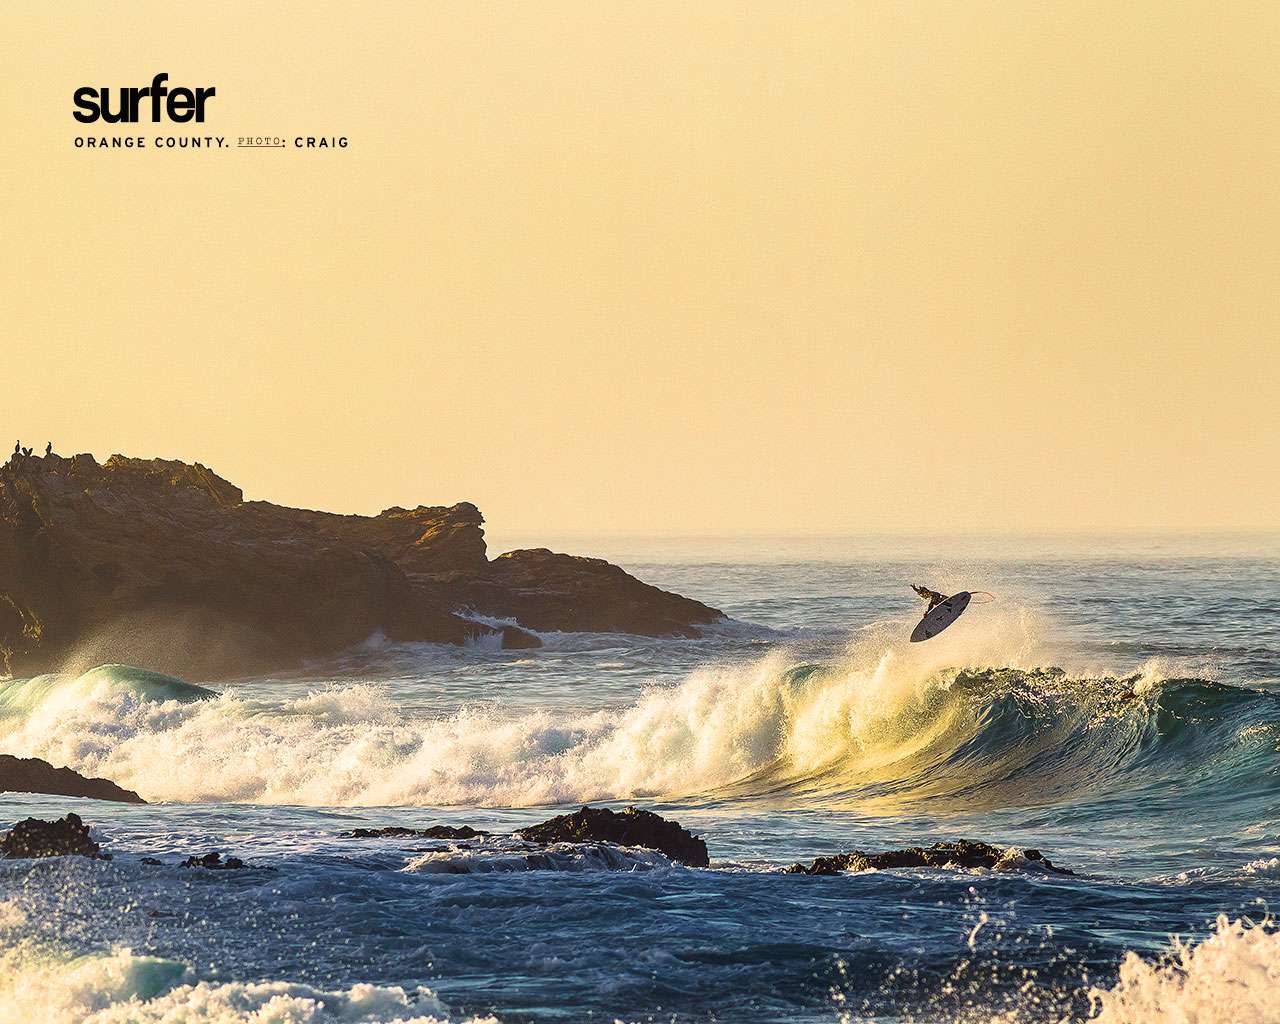 Gratis havstapet med en surfare mitt i vändningen ovanför en våg nära klippor och klippor